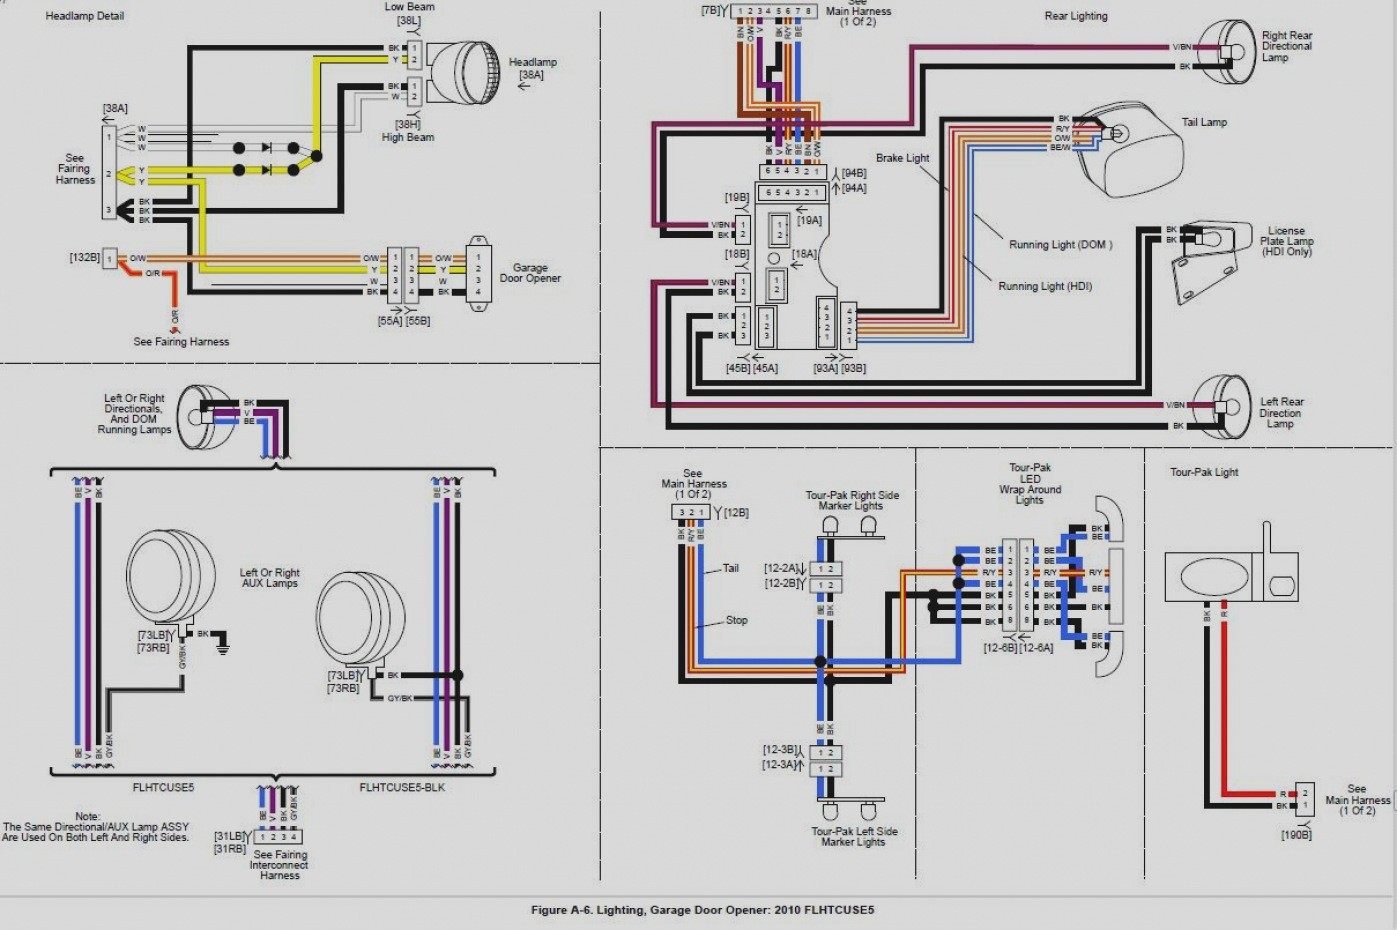 Wiring Diagram Genie Garage Door Opener Wiring Diagram Elegant 23